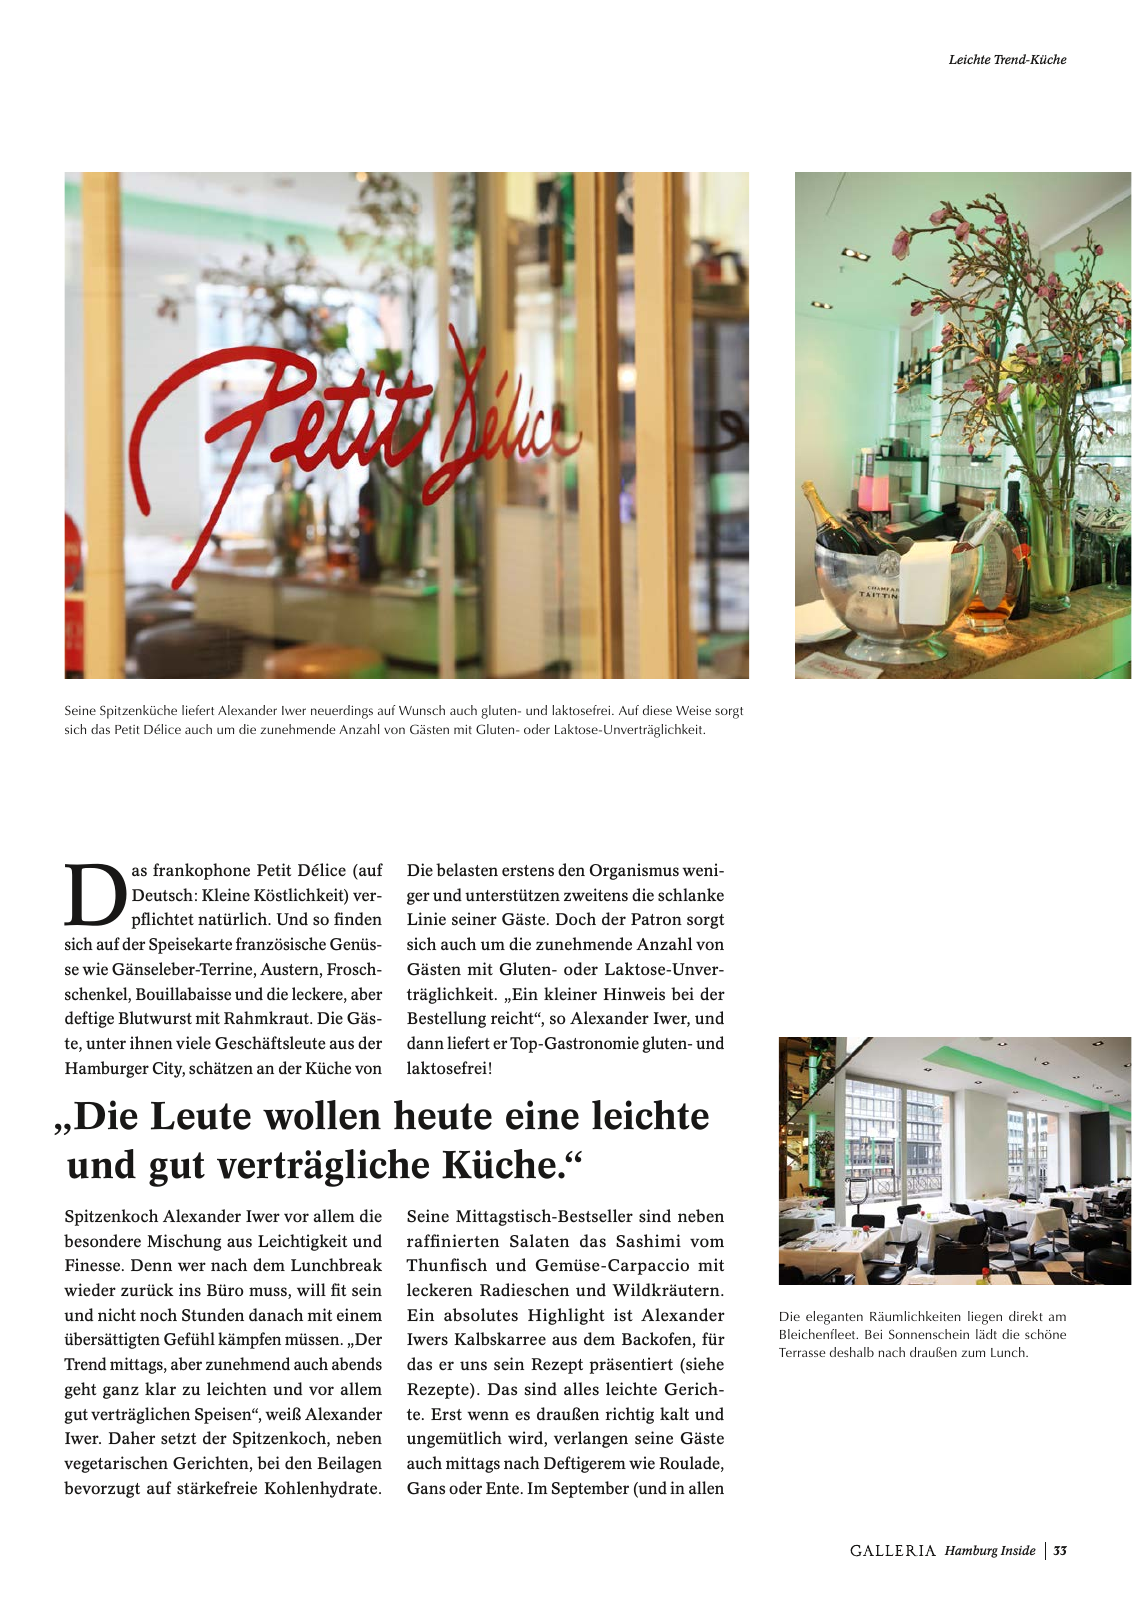 Vorschau GALLERIA Magazin Hamburg Inside 1 Seite 33